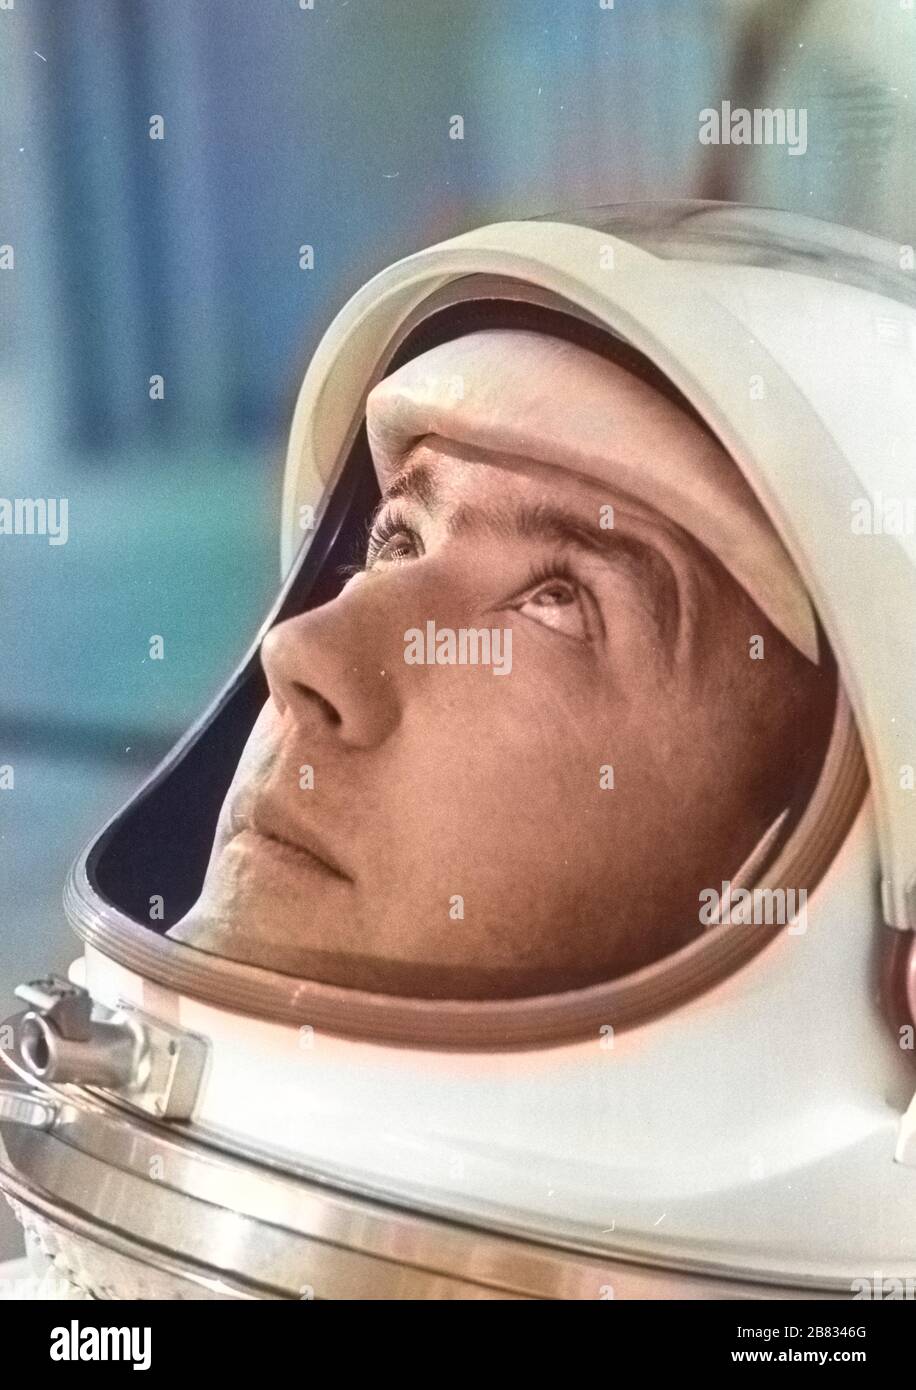 Le commandant de l'astronaute Gemini IV James A. McDivitt a préparé des tests de poids et d'équilibre, le 21 mai 1965. Image reproduite avec l'aimable autorisation de la National Aeronautics and Space Administration (NASA). Remarque : l'image a été colorisée numériquement à l'aide d'un processus moderne. Les couleurs peuvent ne pas être précises sur une période donnée. () Banque D'Images